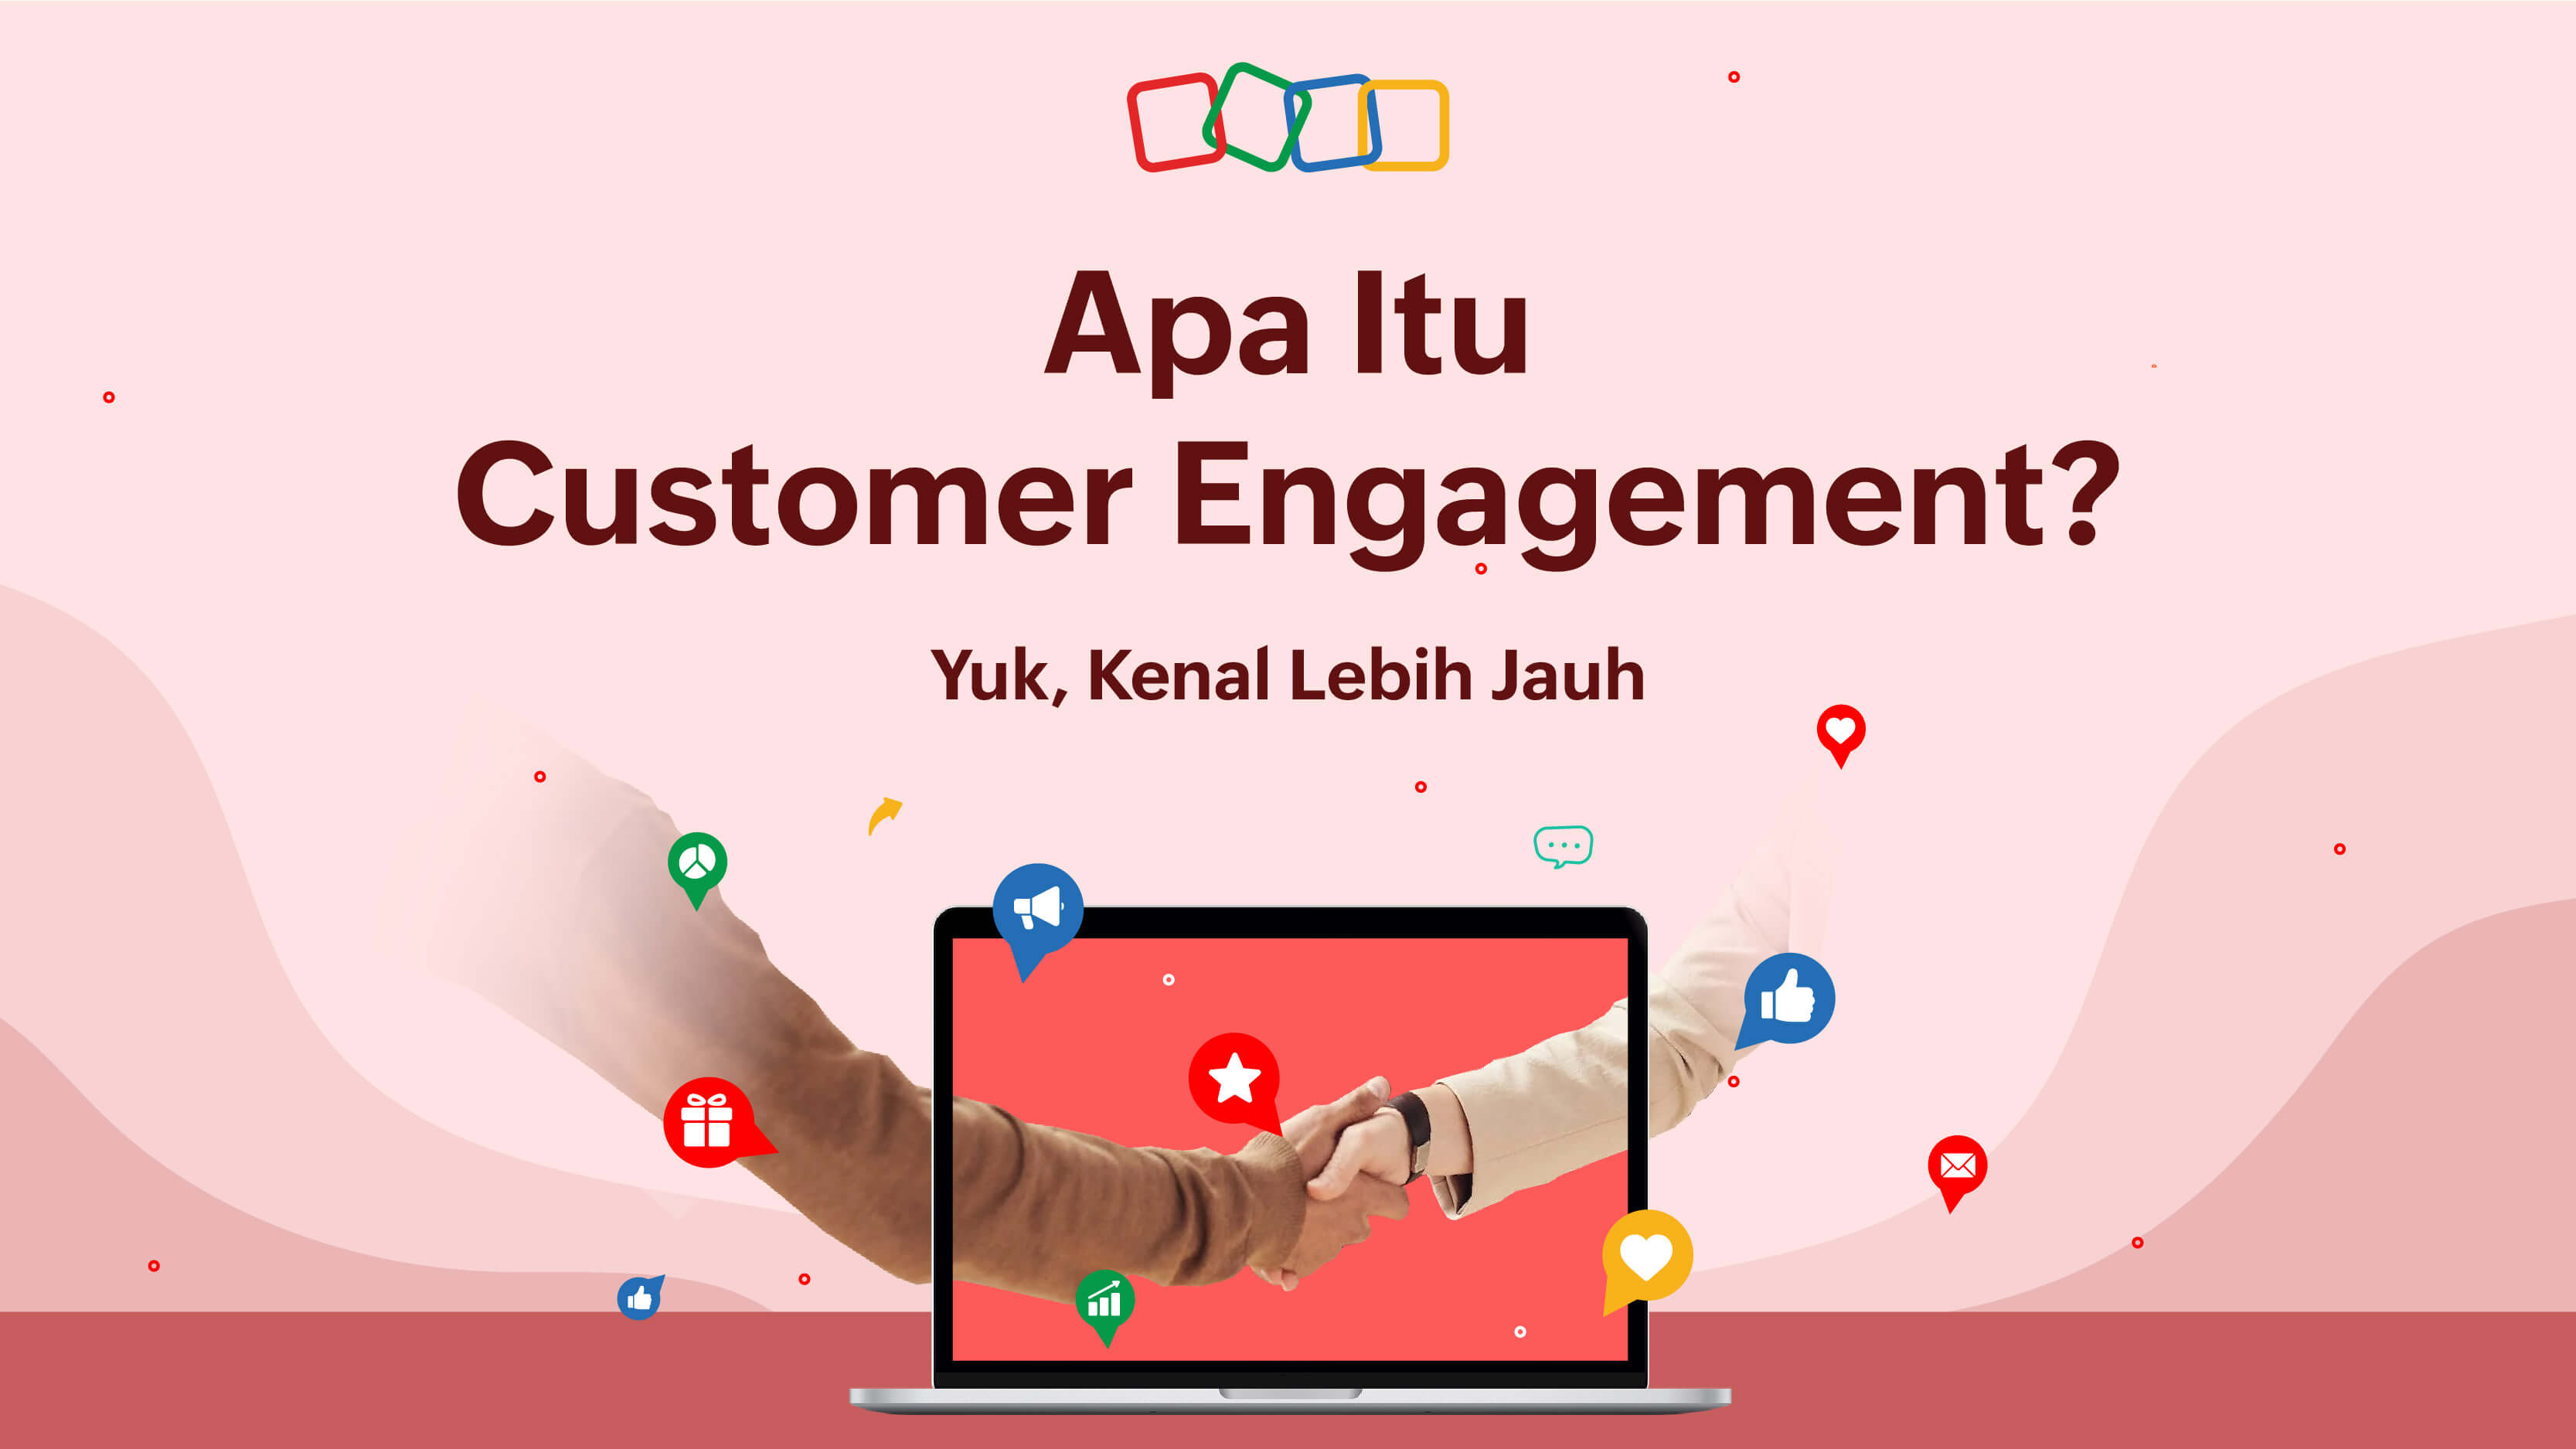 Apa itu customer engagement?